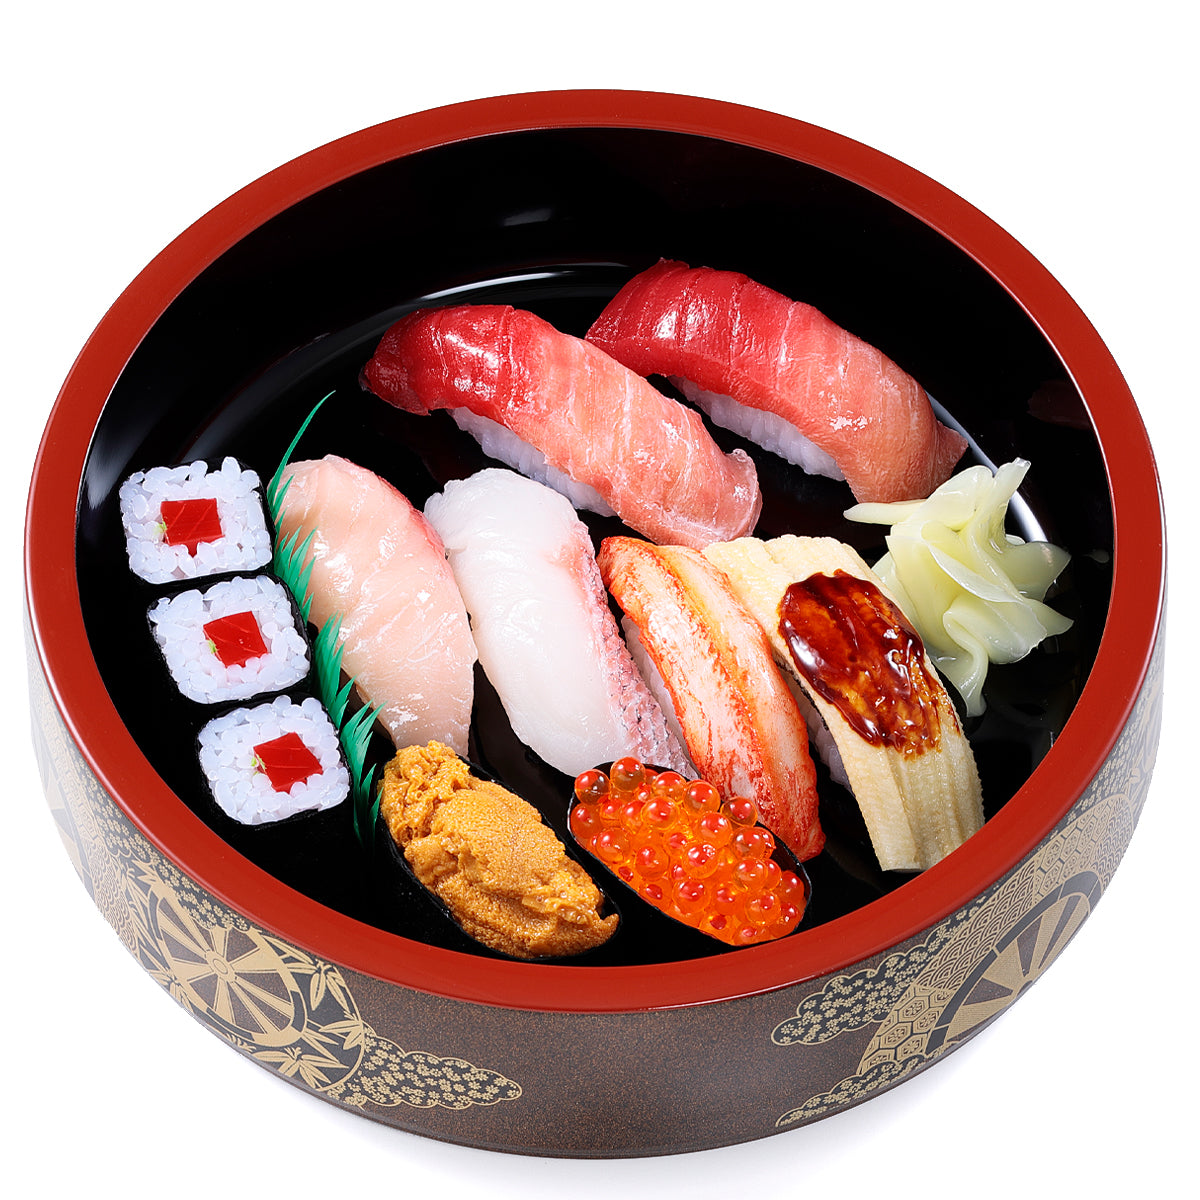 これは元祖食品サンプル屋のオリジナル食品サンプル「にぎり寿司桶」の商品画像です。(英語表記) sushi of replica food